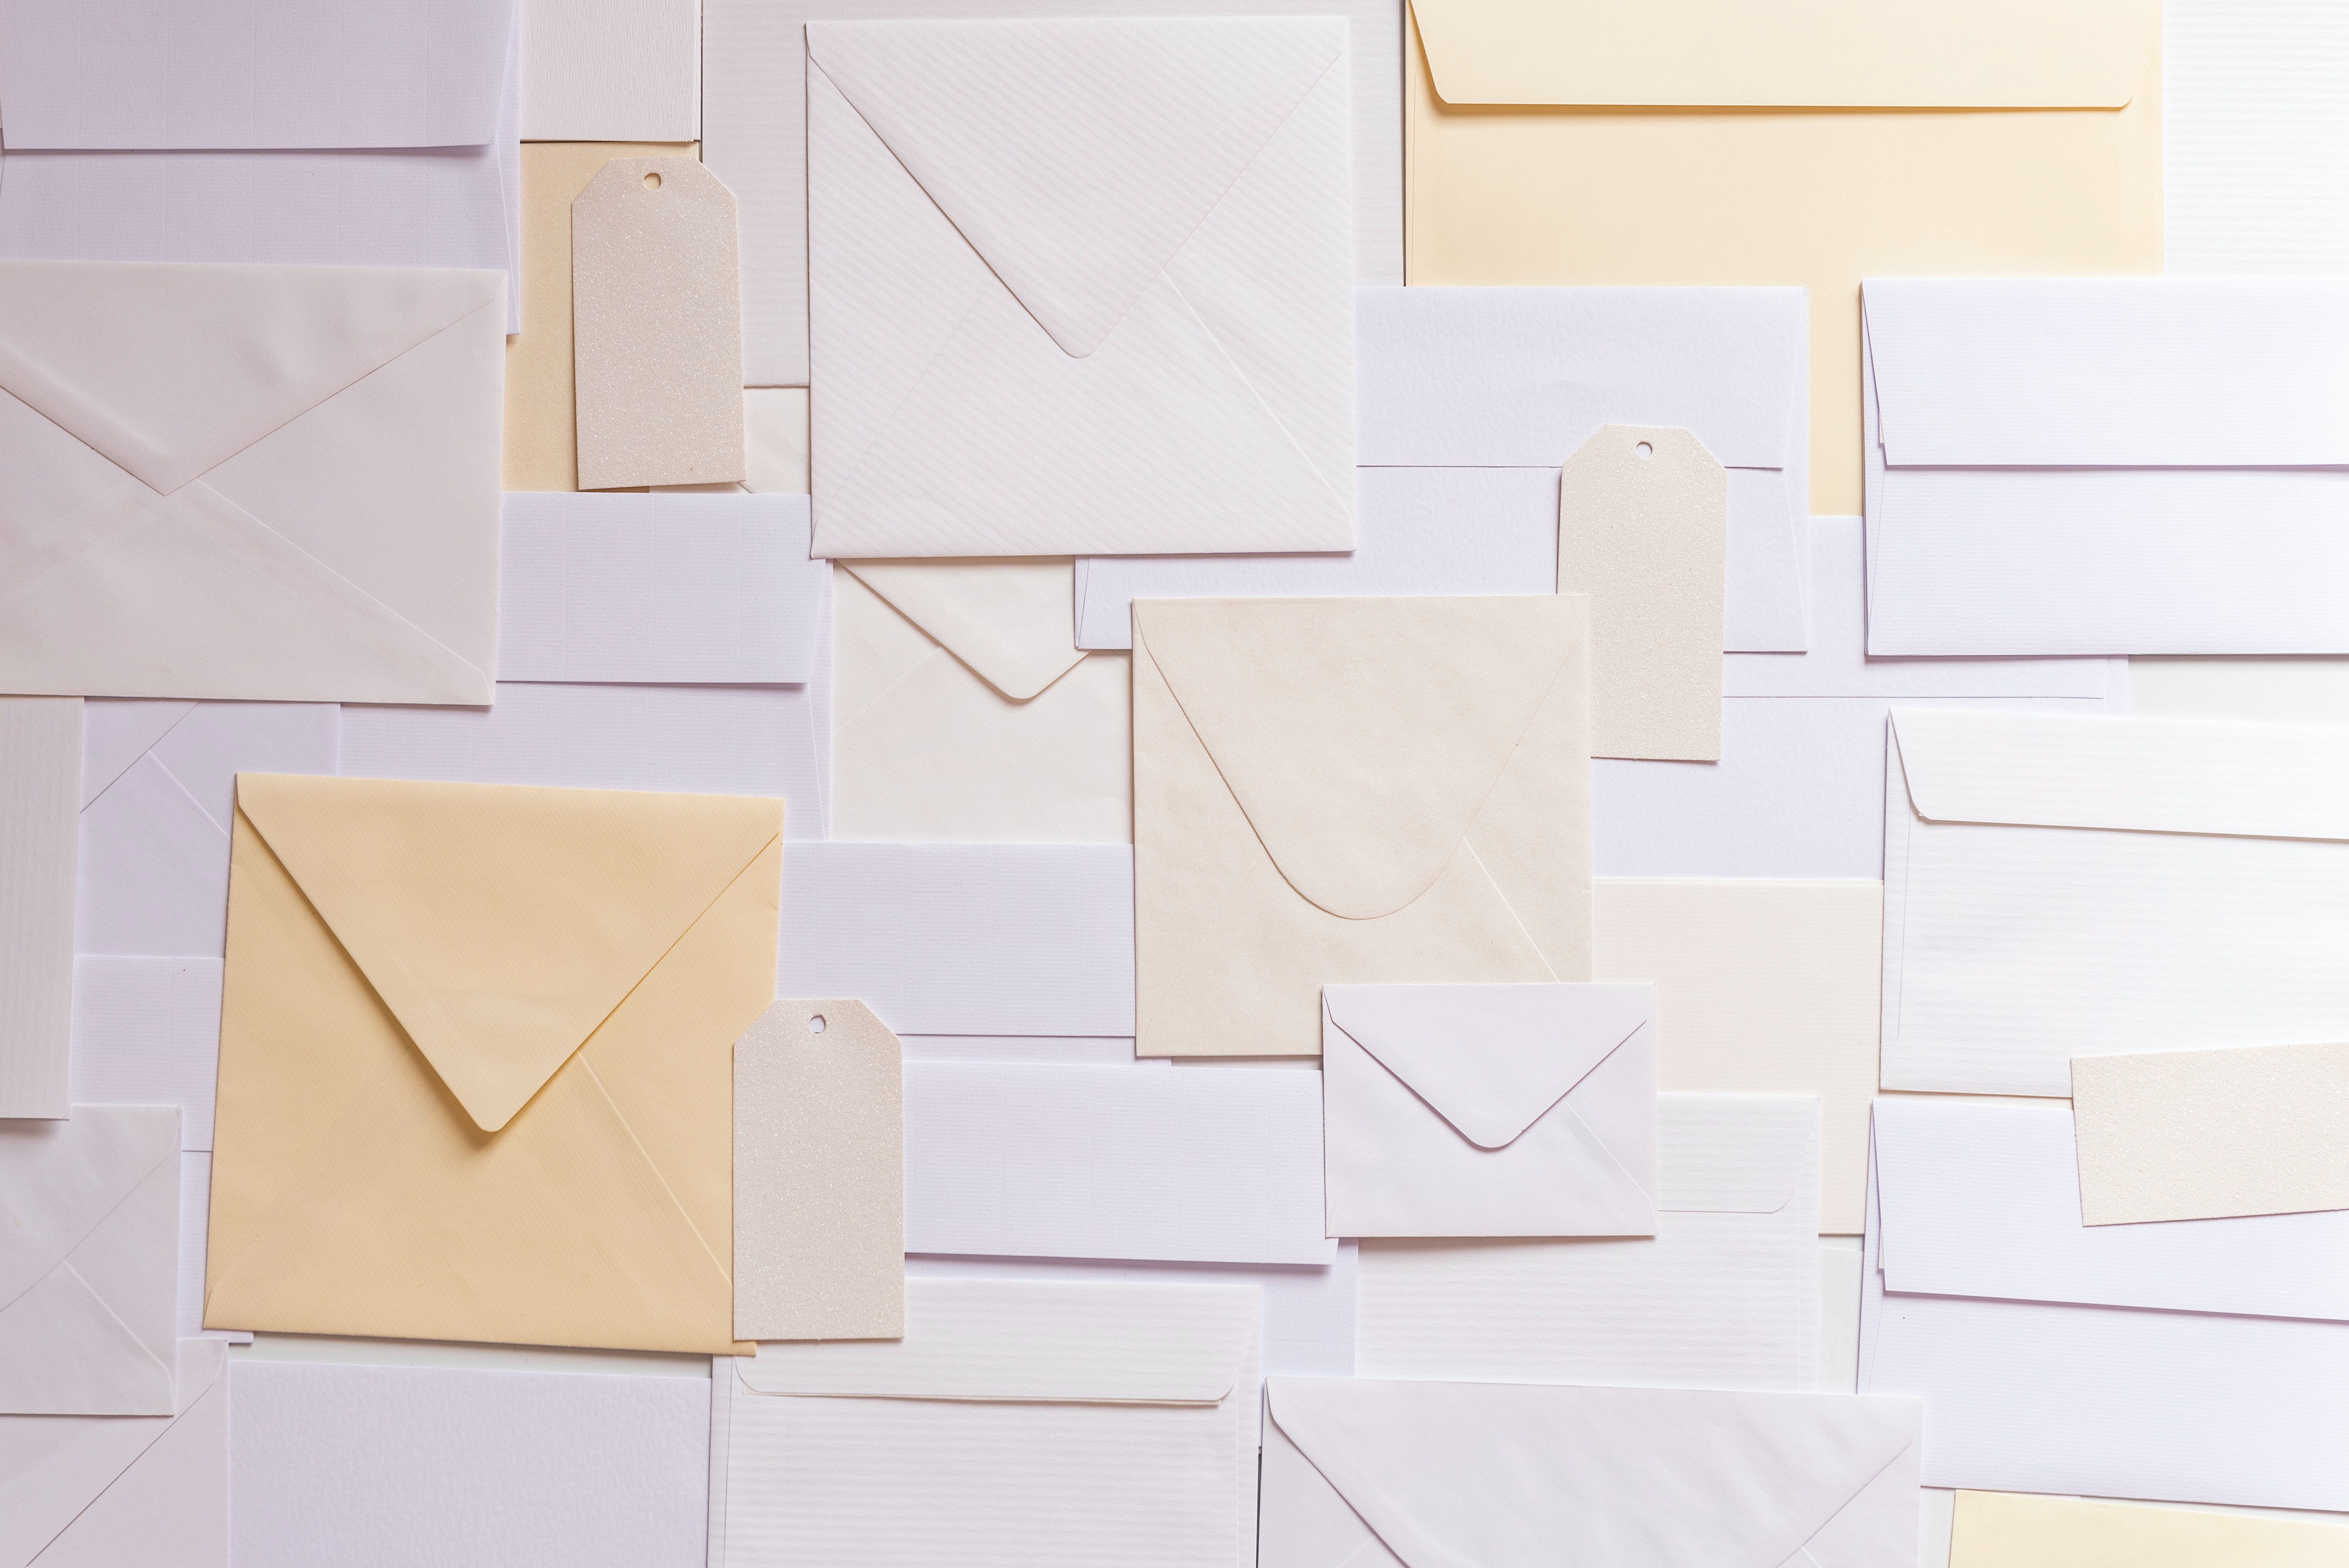 Inzet plan ophouden Enveloppen winkel - Enveloppen van goede kwaliteit én lage prijzen  gekleurde enveloppen